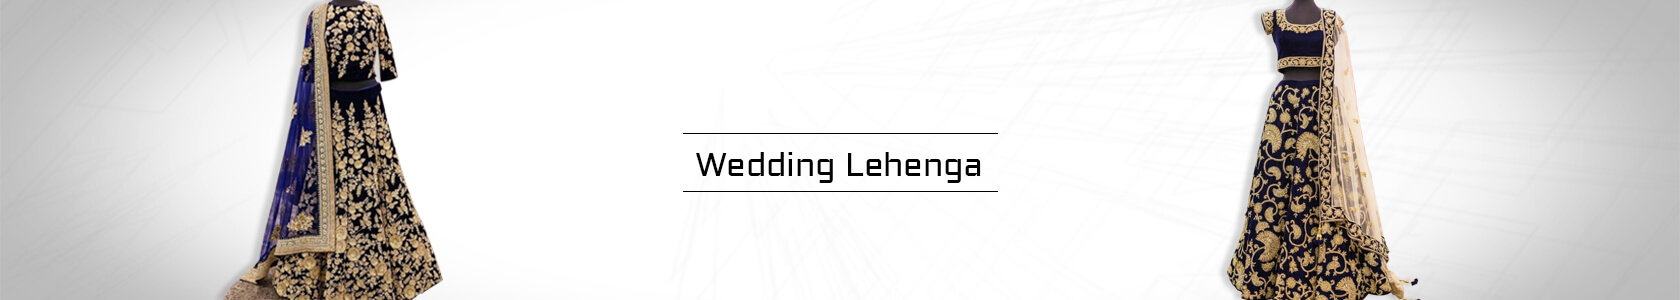 Wedding Lehenga